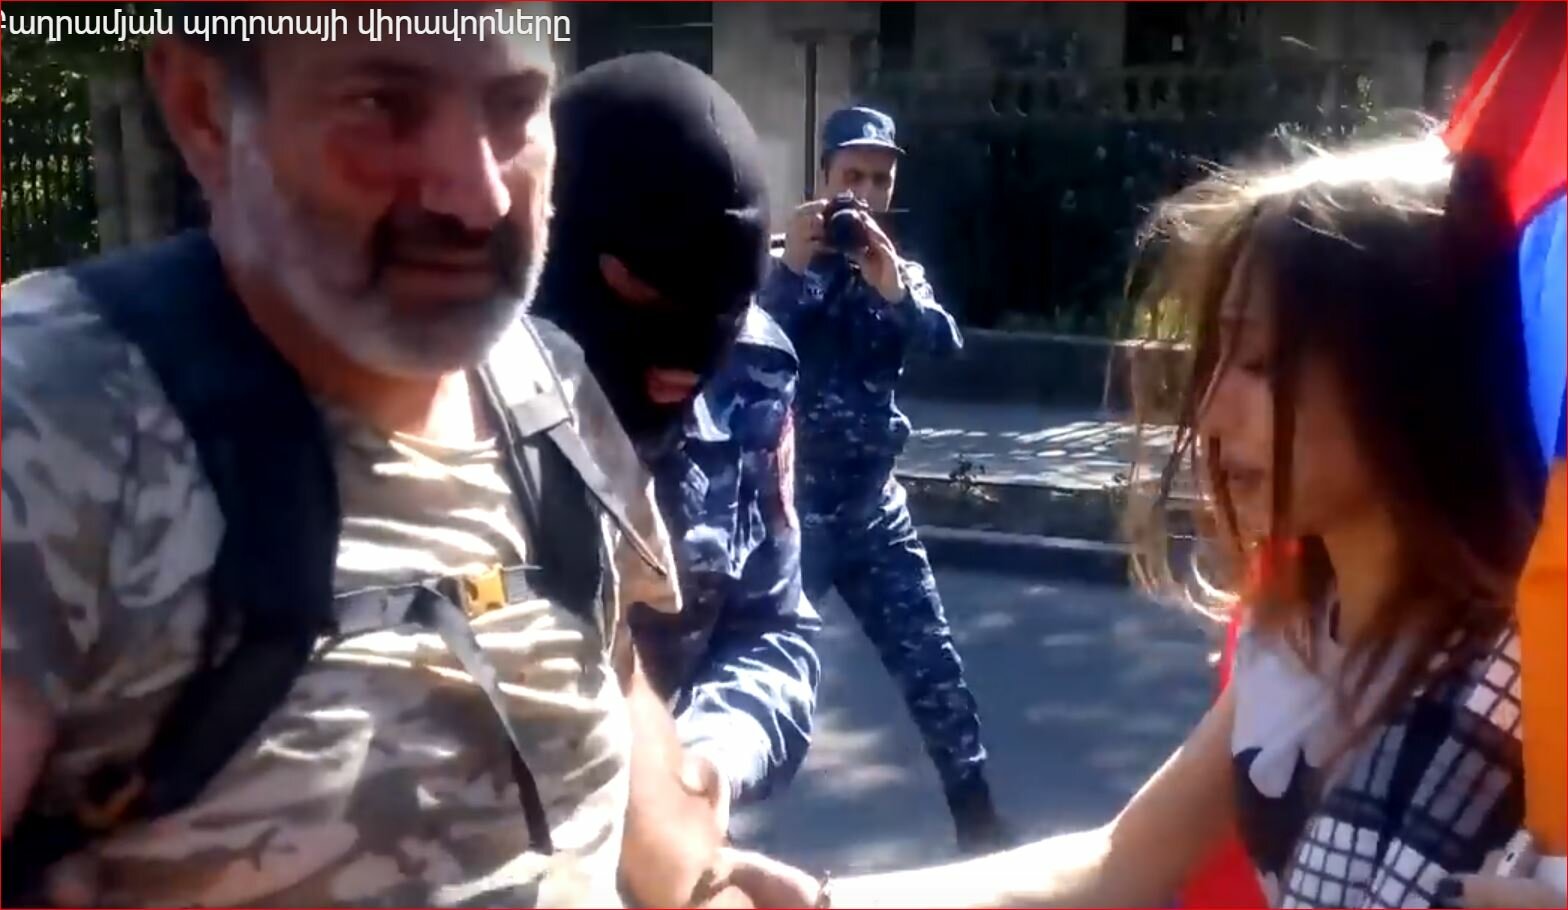 Появилось видео стычки митингующих и полиции в ходе массового протеста в Ереване - кадры